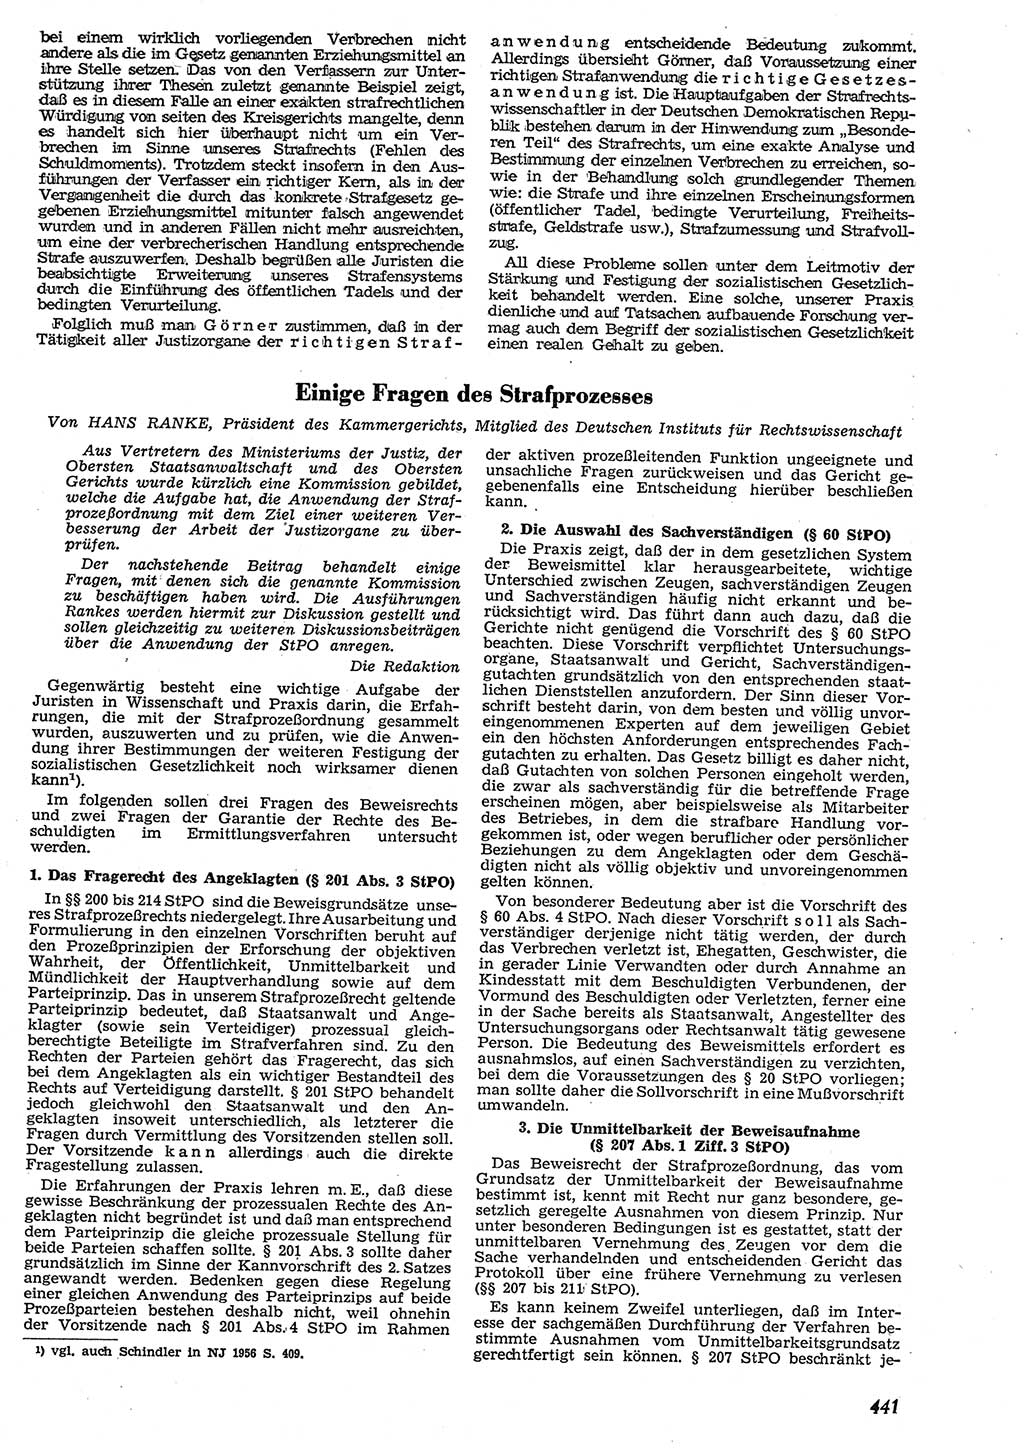 Neue Justiz (NJ), Zeitschrift für Recht und Rechtswissenschaft [Deutsche Demokratische Republik (DDR)], 10. Jahrgang 1956, Seite 441 (NJ DDR 1956, S. 441)